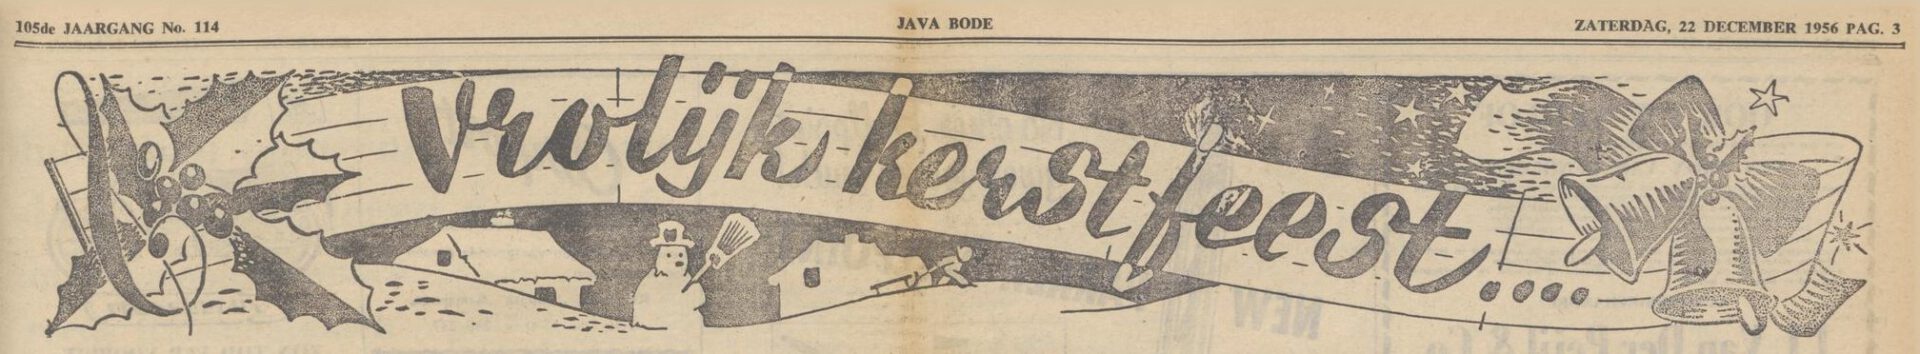 Oude kerstgebruiken - Java-bode, 22 december 1956